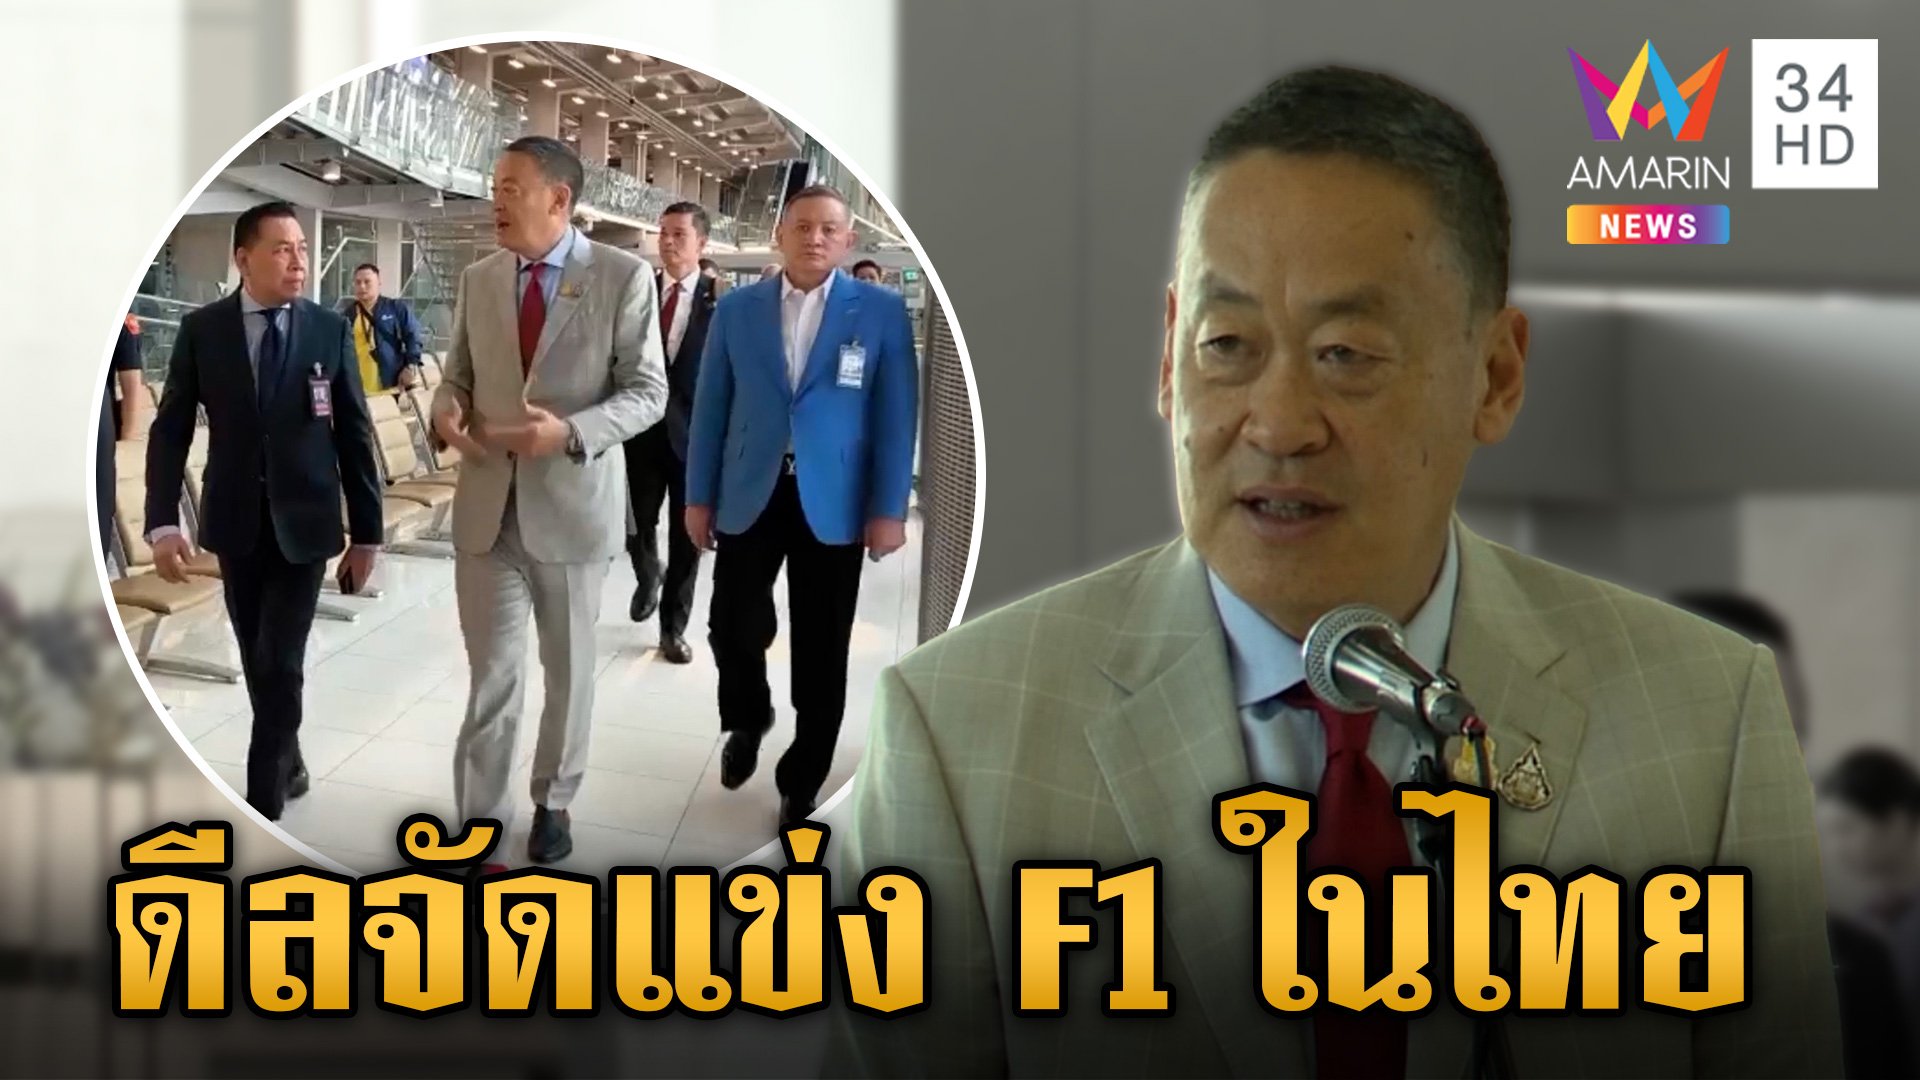 ภารกิจแน่น! นายกฯ บินยุโรป 11 วัน ถกวีซ่าเชงเก้น ทาบจัด F1 ในไทย  | ข่าวเย็นอมรินทร์ | 4 มี.ค. 67 | AMARIN TVHD34